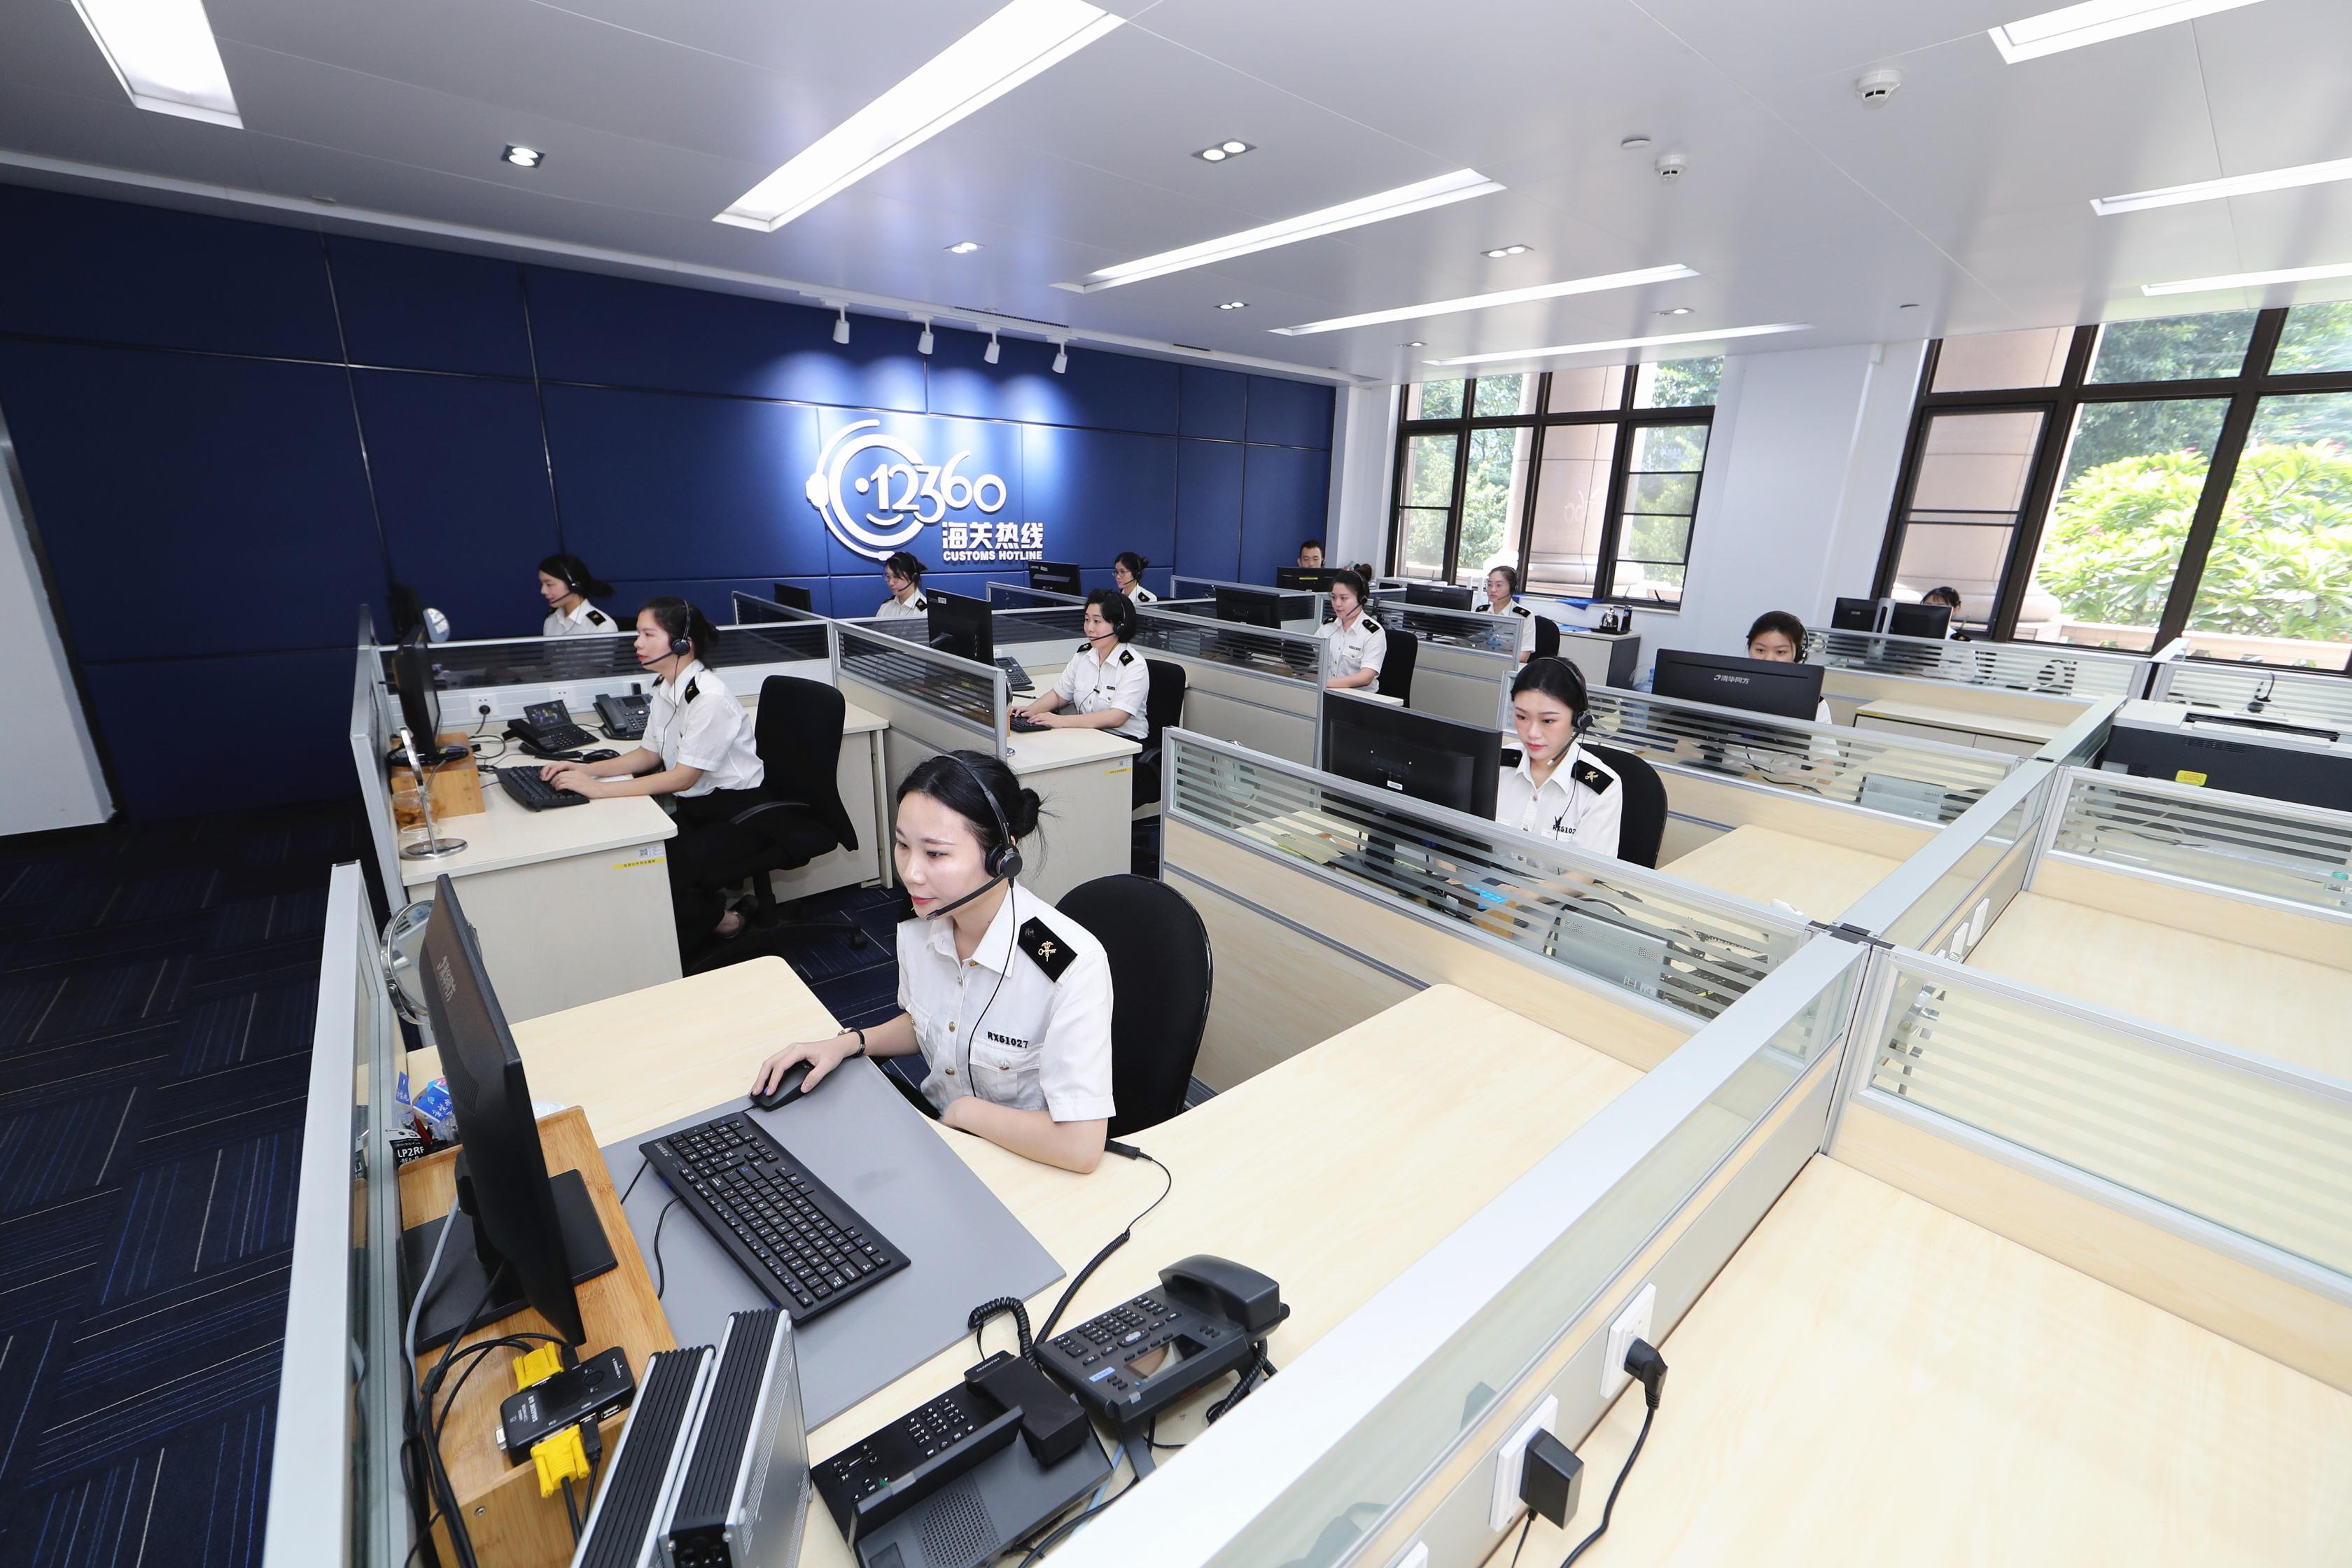 广州海关12360服务热线有了“新身份”